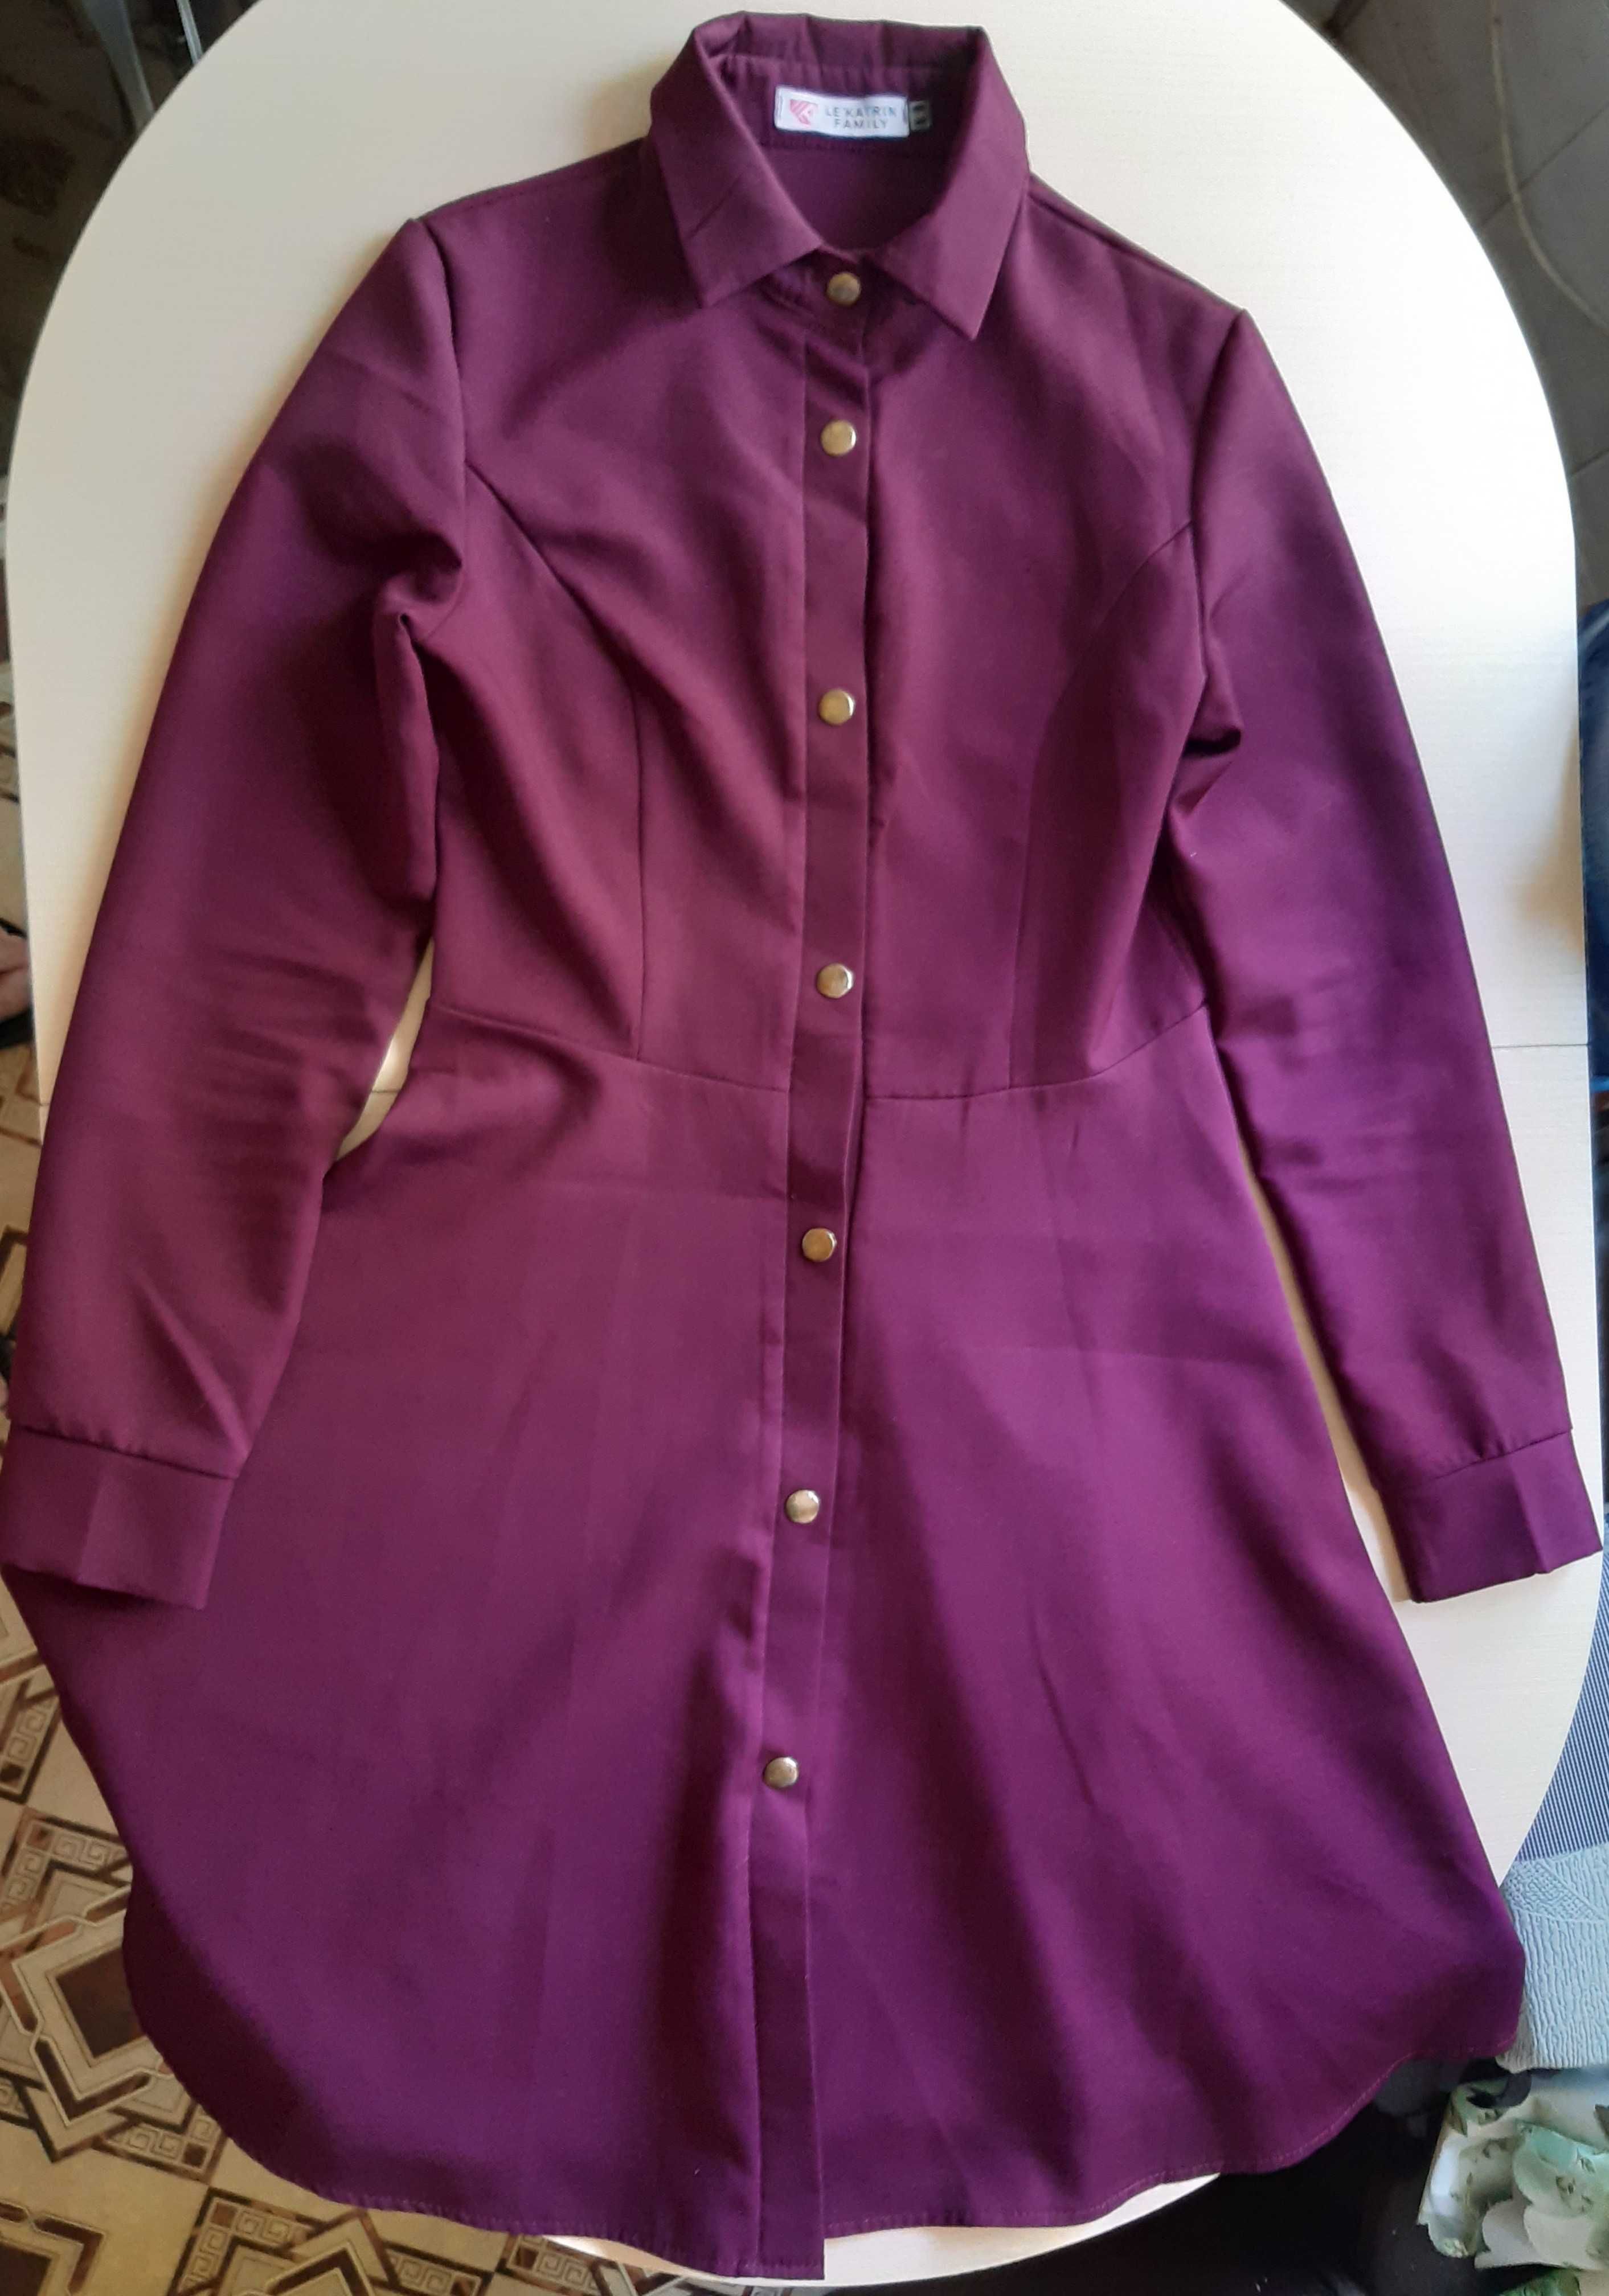 Платье LE'KATRIN FAMILY фиолетовая фуксия Размер: S